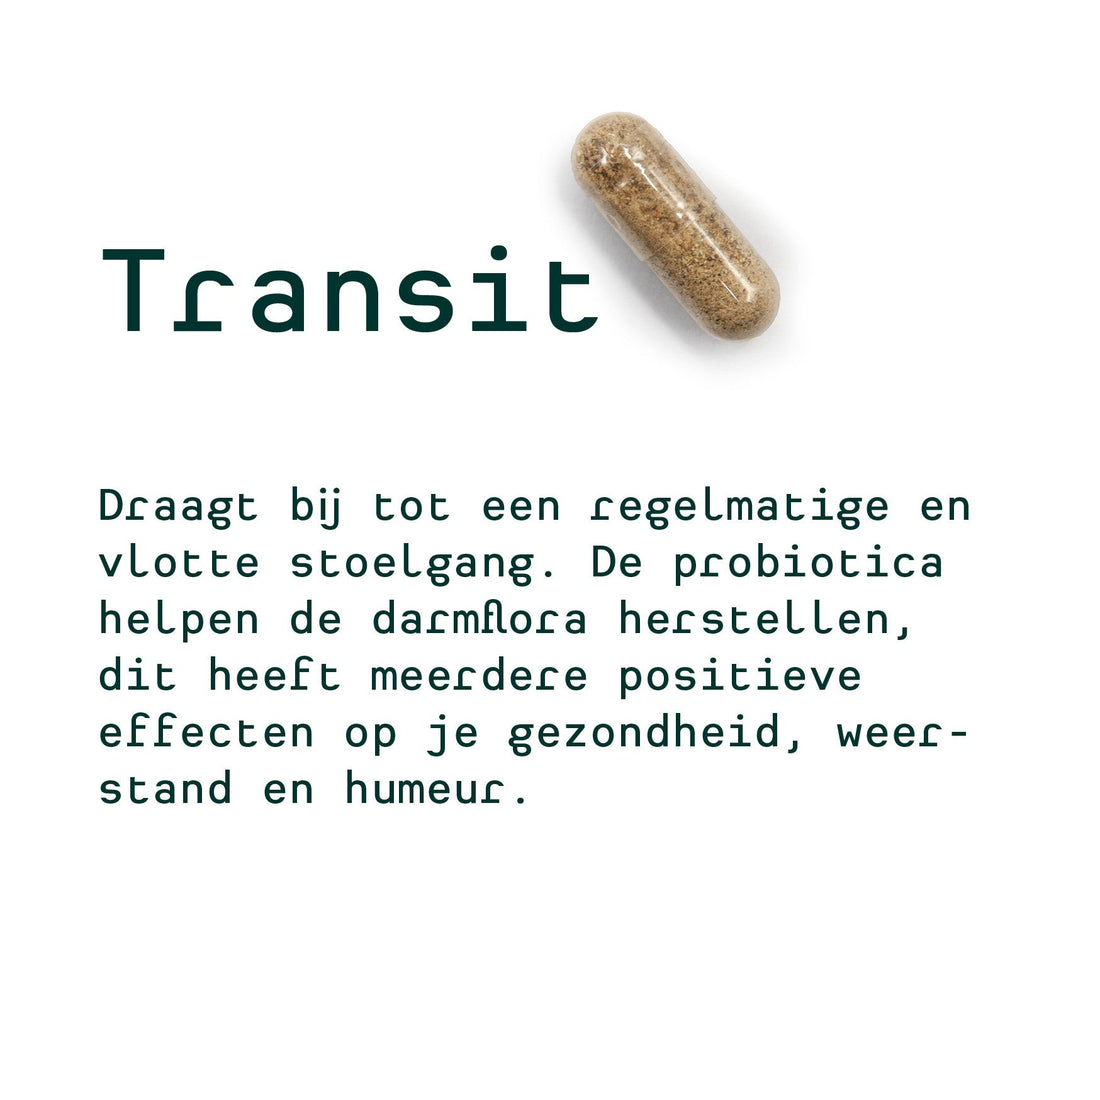 Metis Personalised van Doortje (Valeriaan & Melatonine, Lactobacillus, Transit)